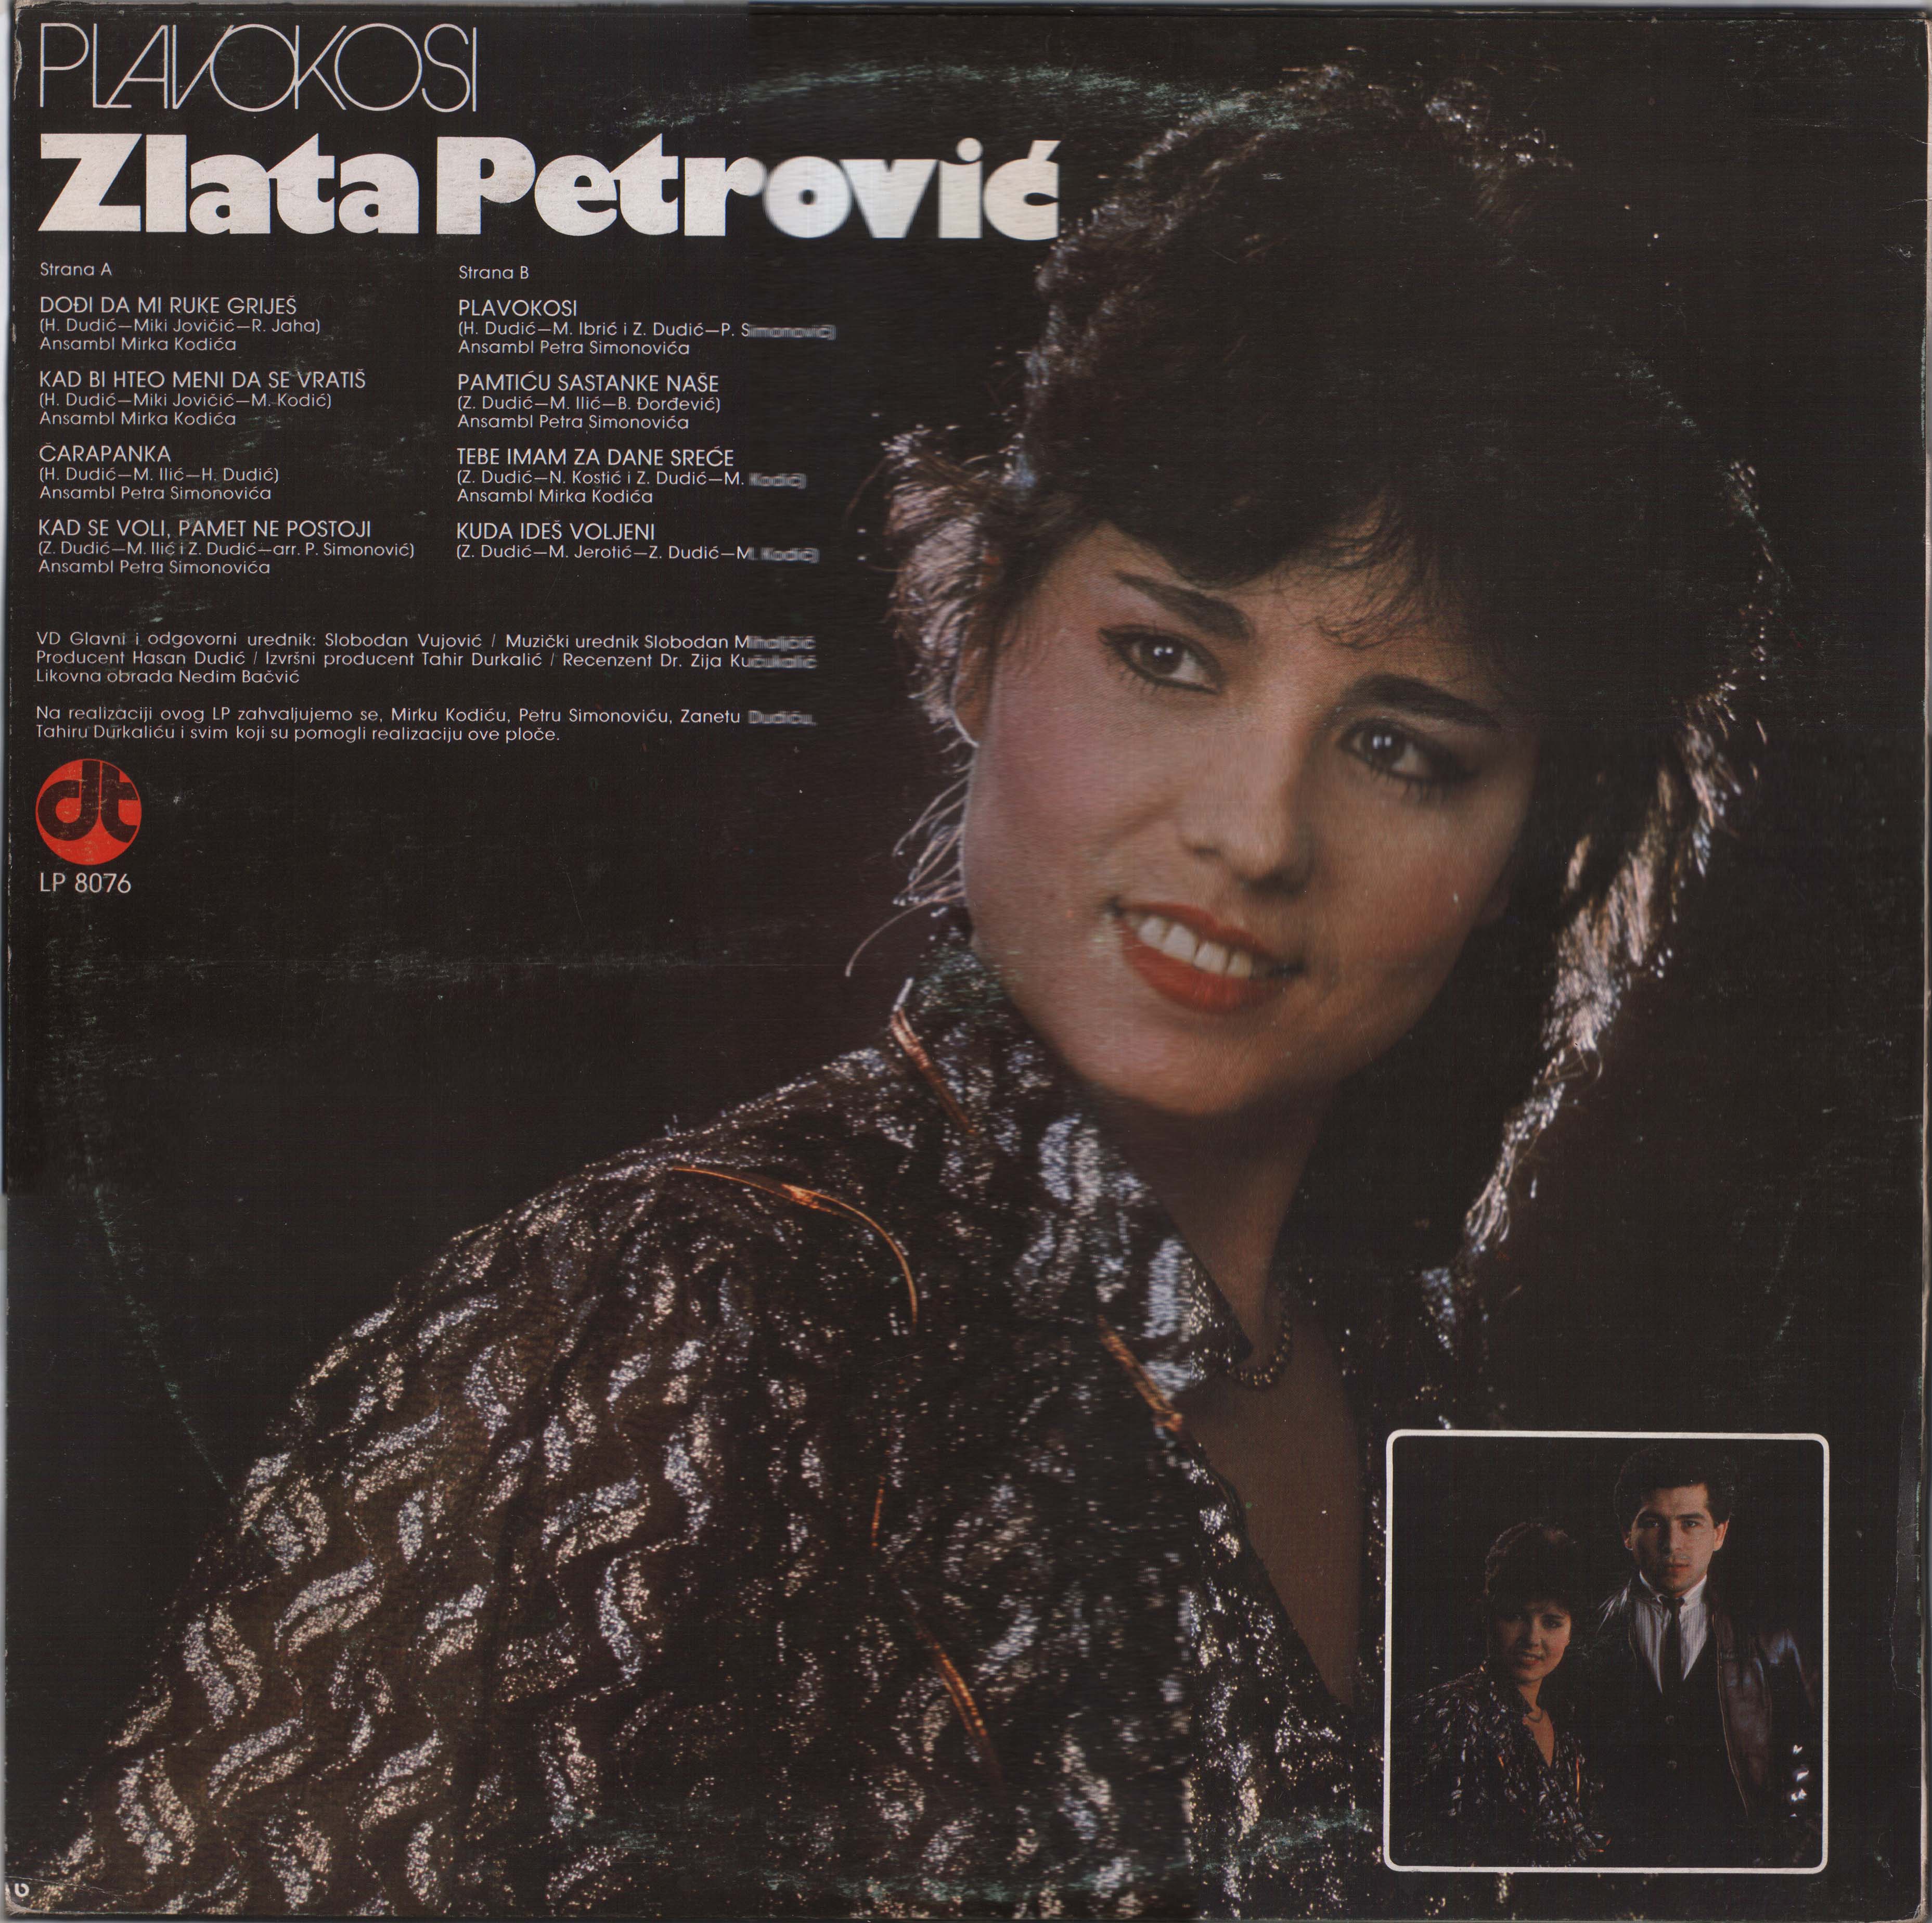 Zlata Petrovic 1983 Z